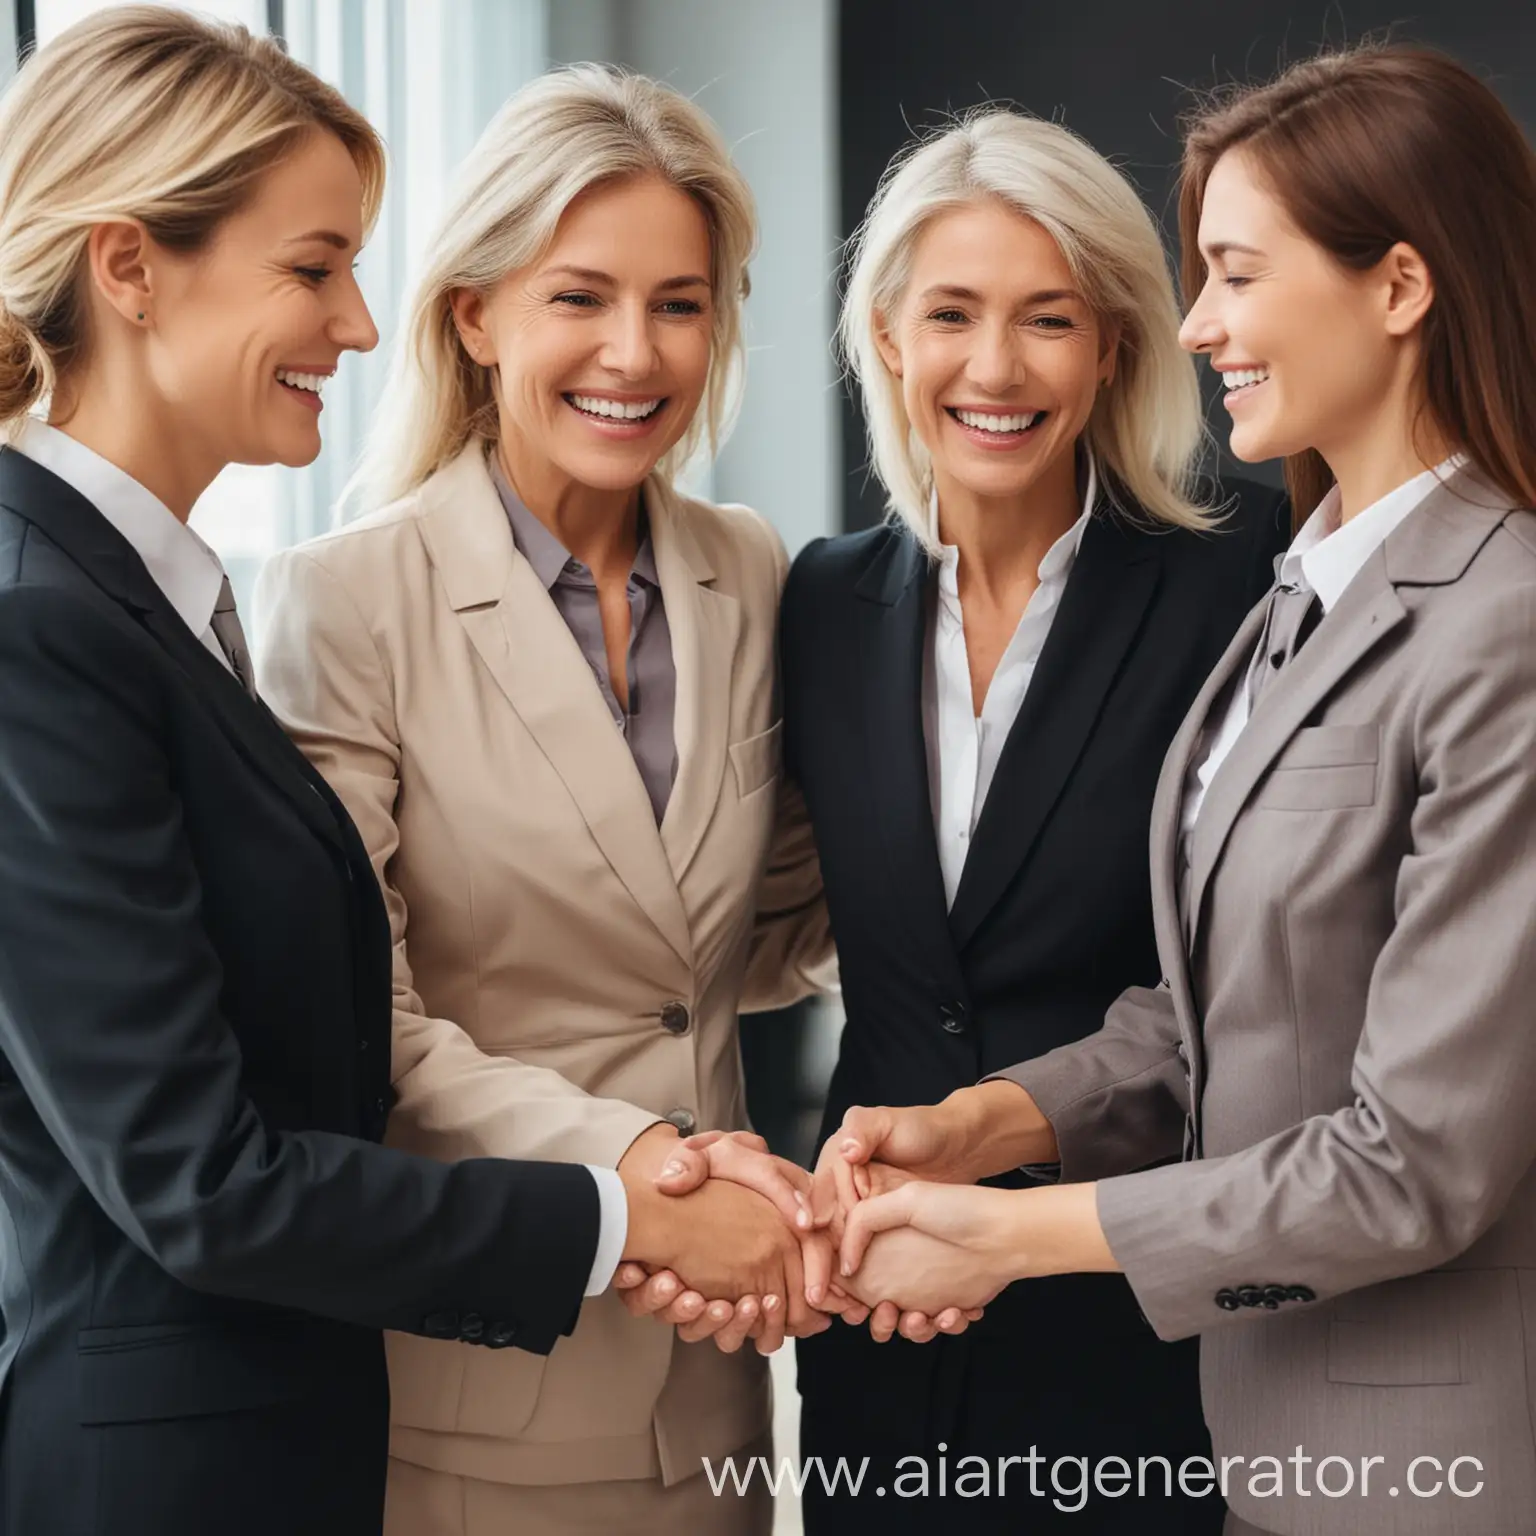 Три бизнес леди разных возрастов принимают поздравления от мужчины владельца компании